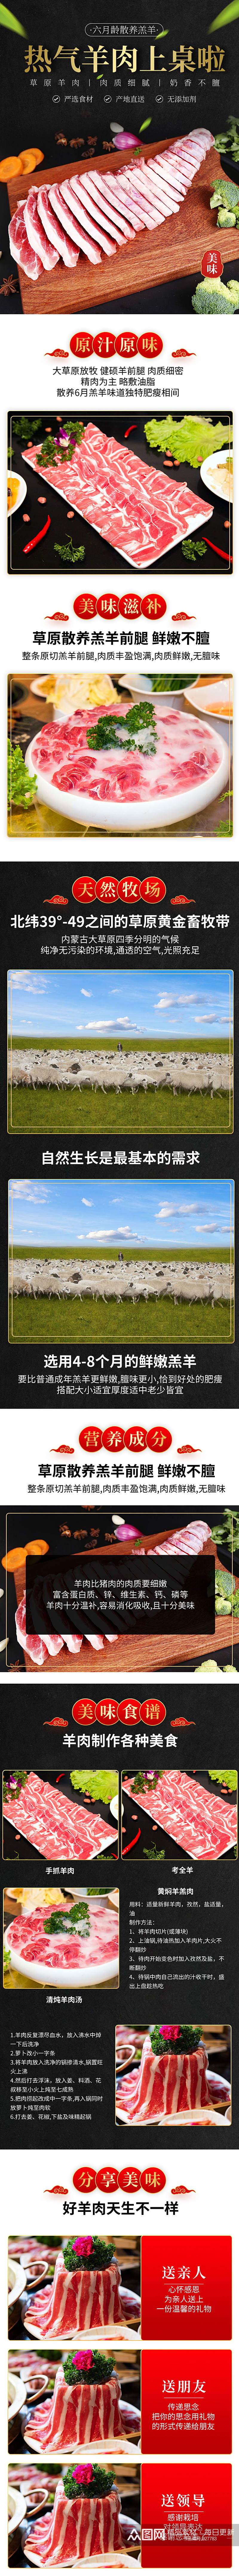 中国风热气羊肉详情页素材